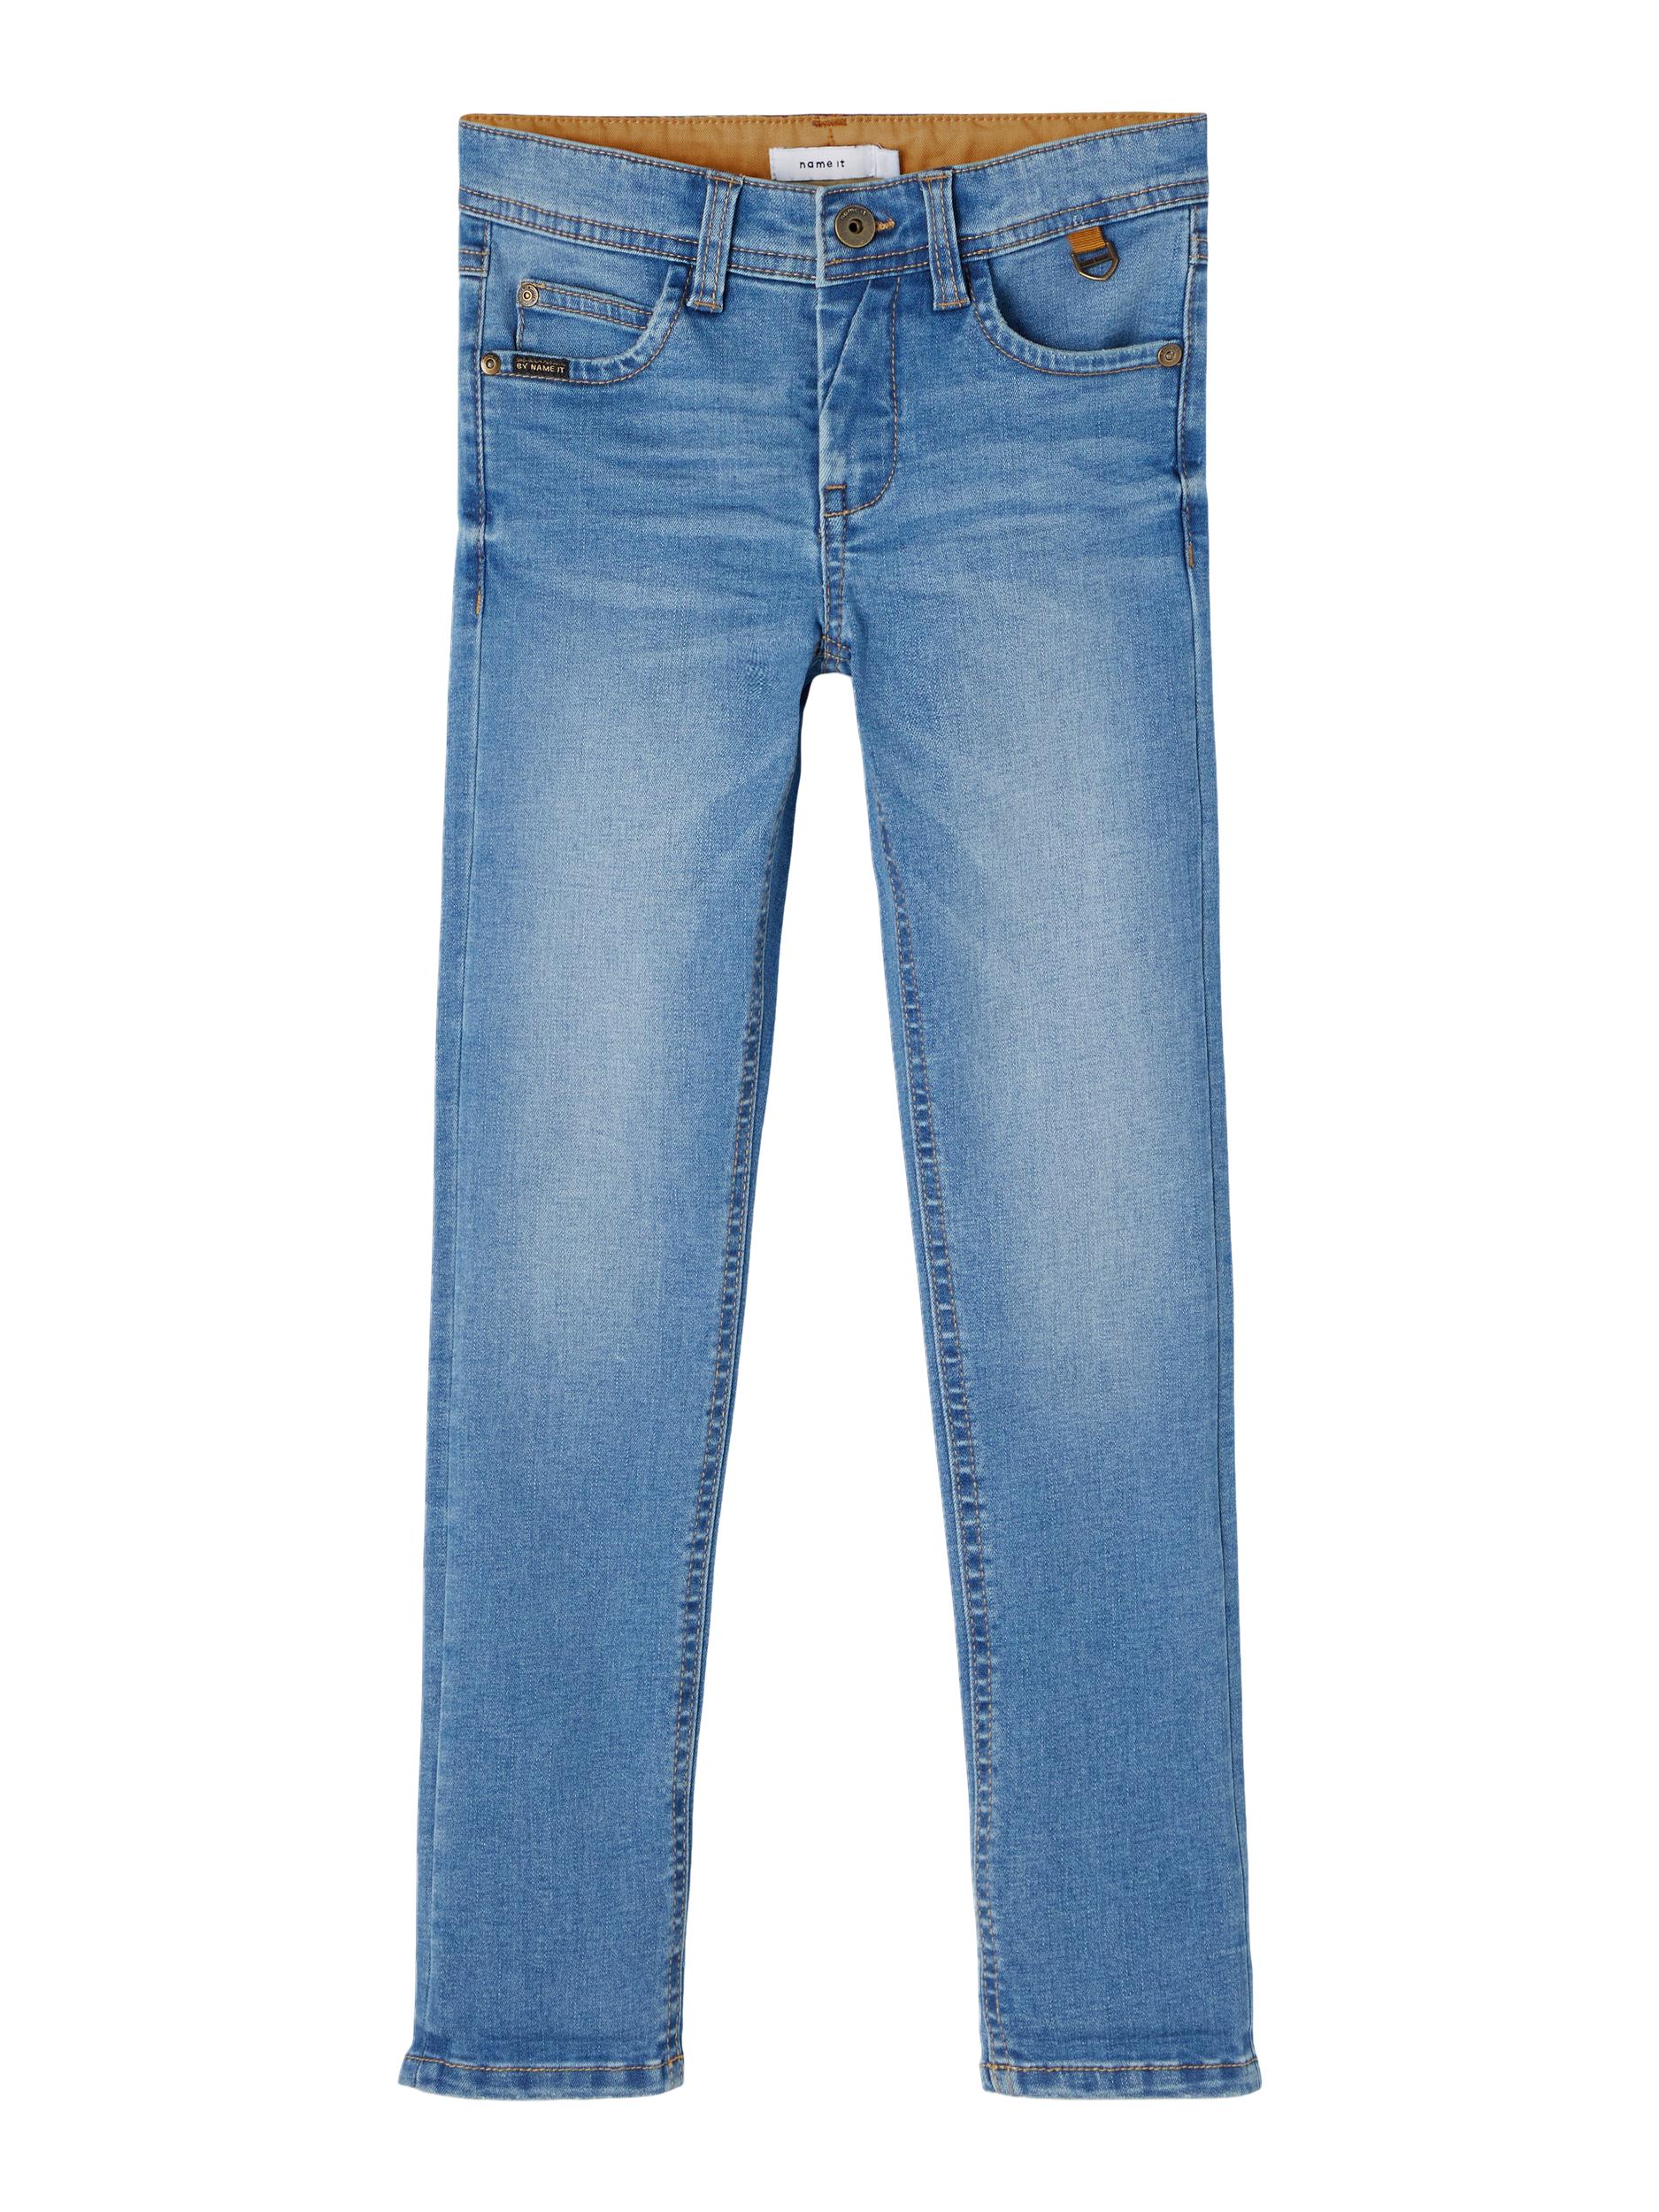 Theo Jeans, Medium Blue Denim, 140 cm